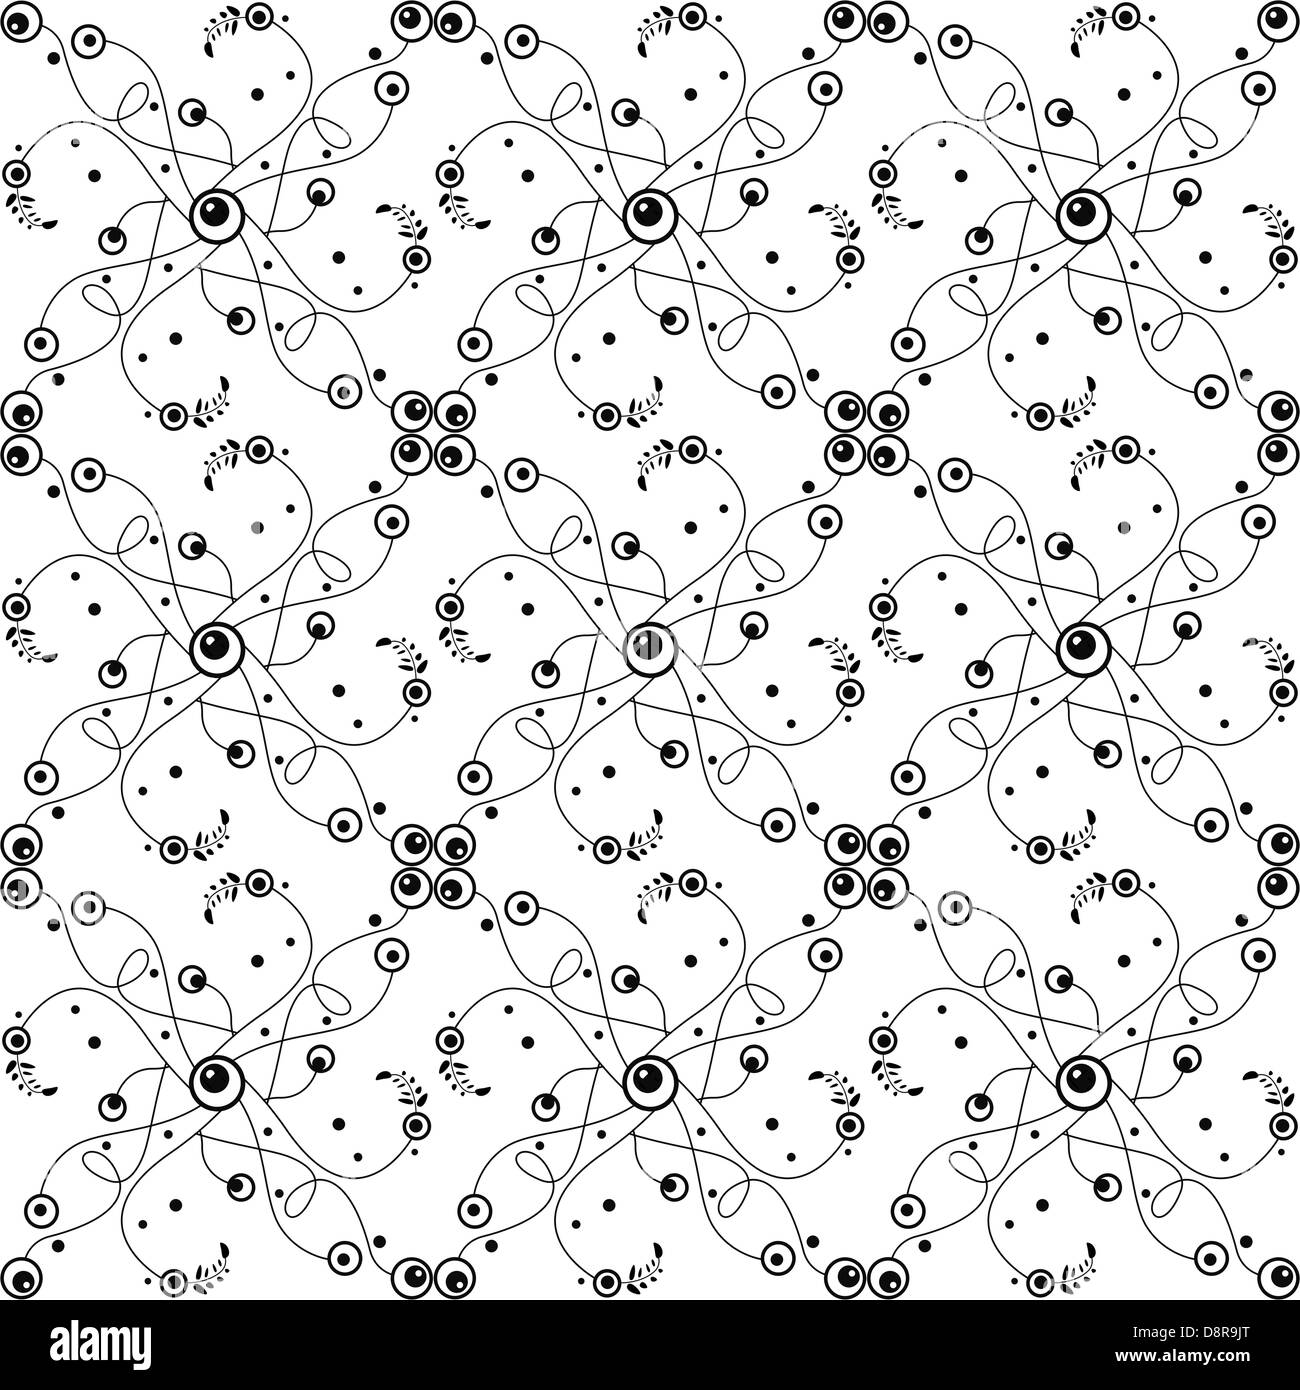 Background of seamless bubble dots pattern Stock Photo - Alamy